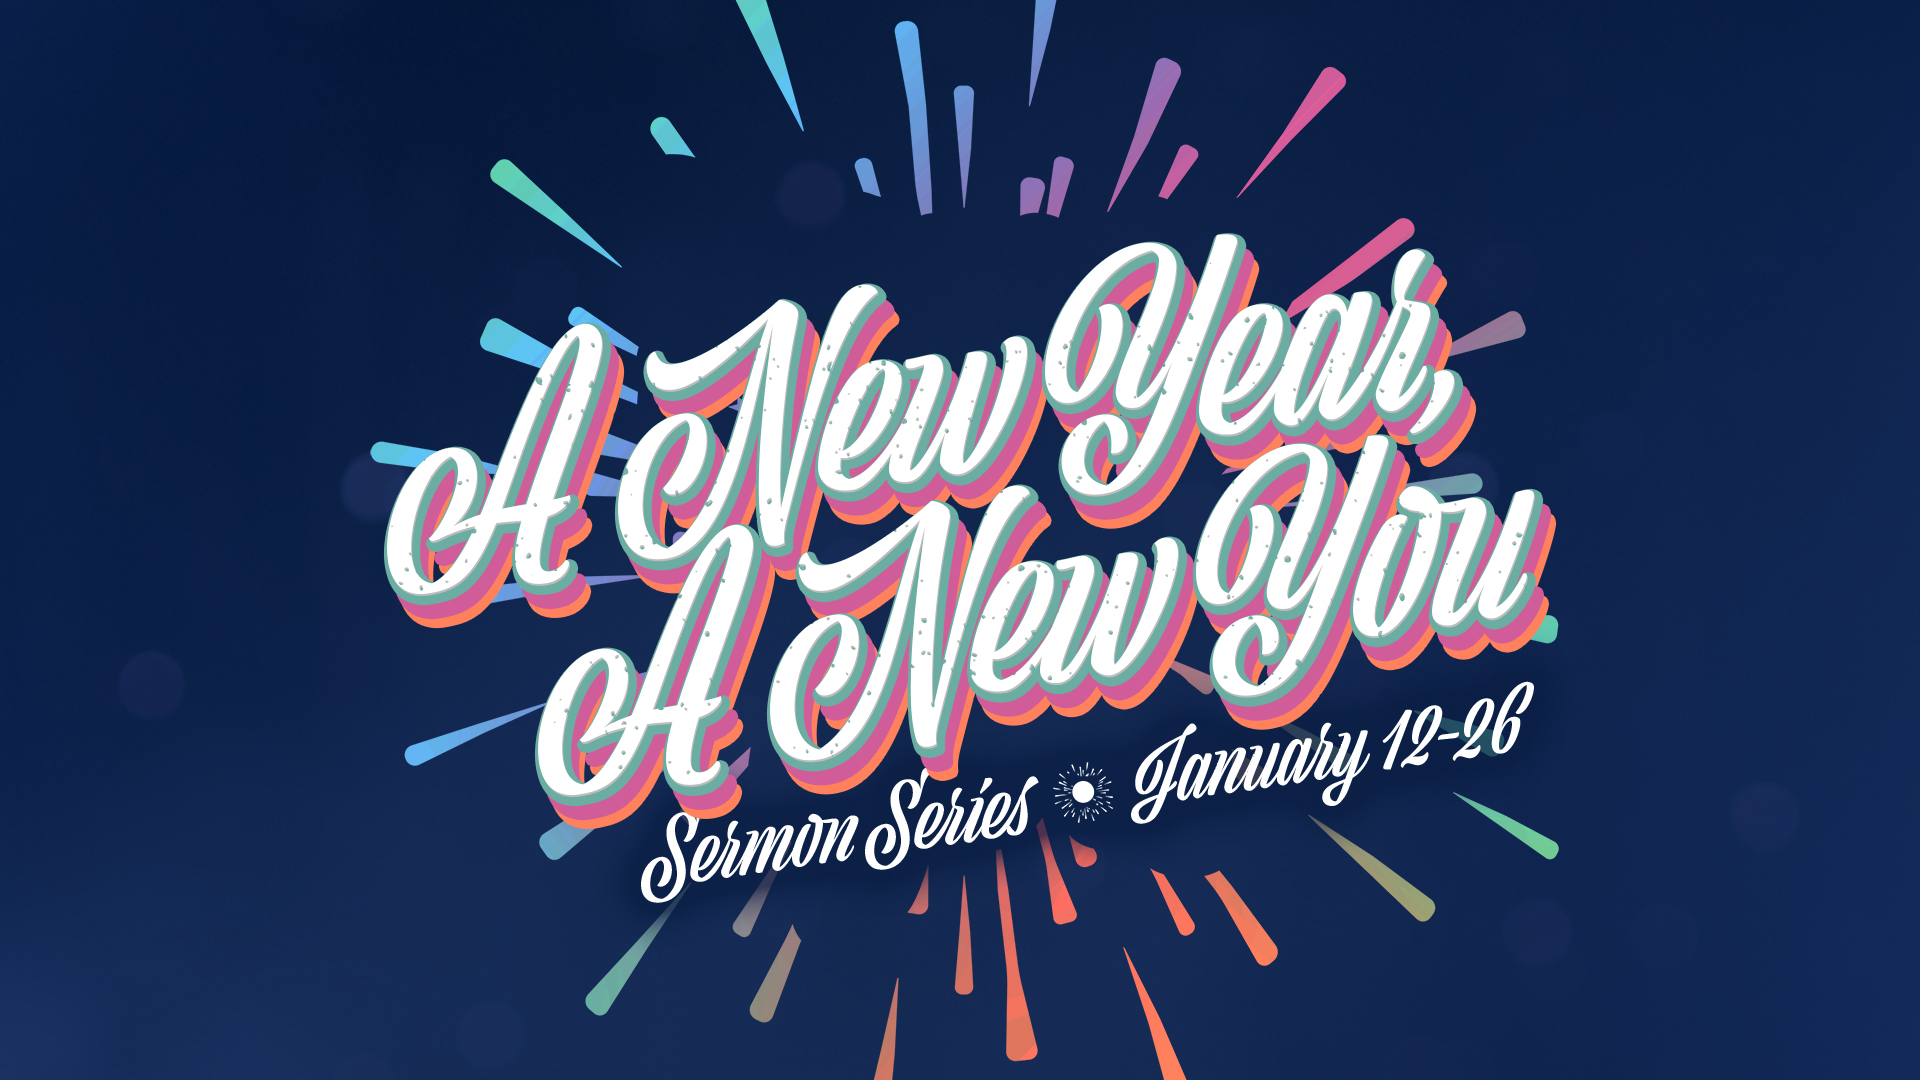 “A New Year, A New You” Sermon Series Asbury United Methodist Church